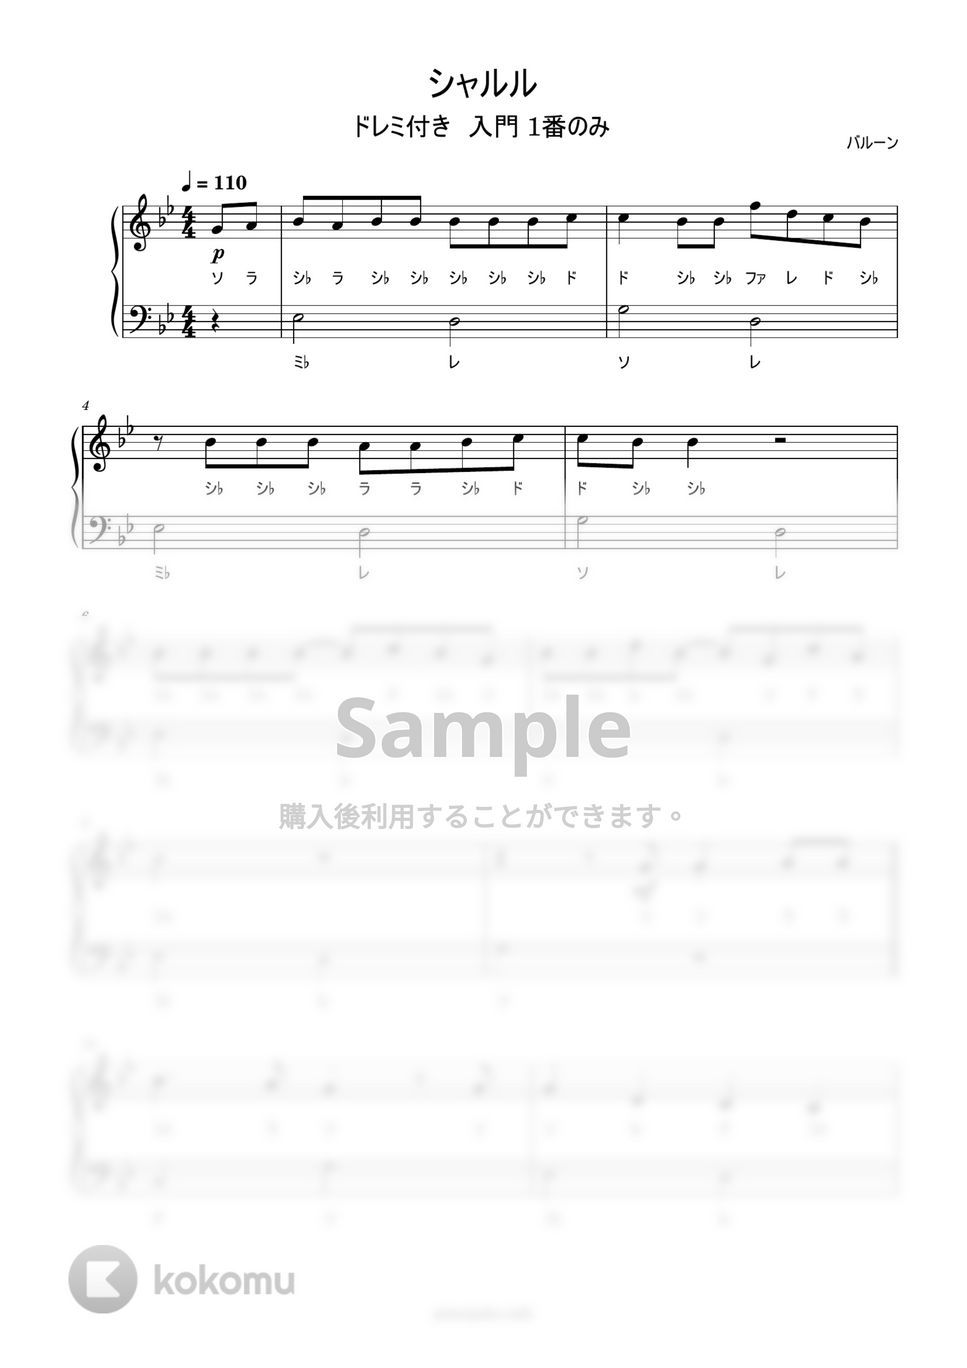 バルーン - シャルル (ドレミ付き/簡単楽譜) by ピアノ塾